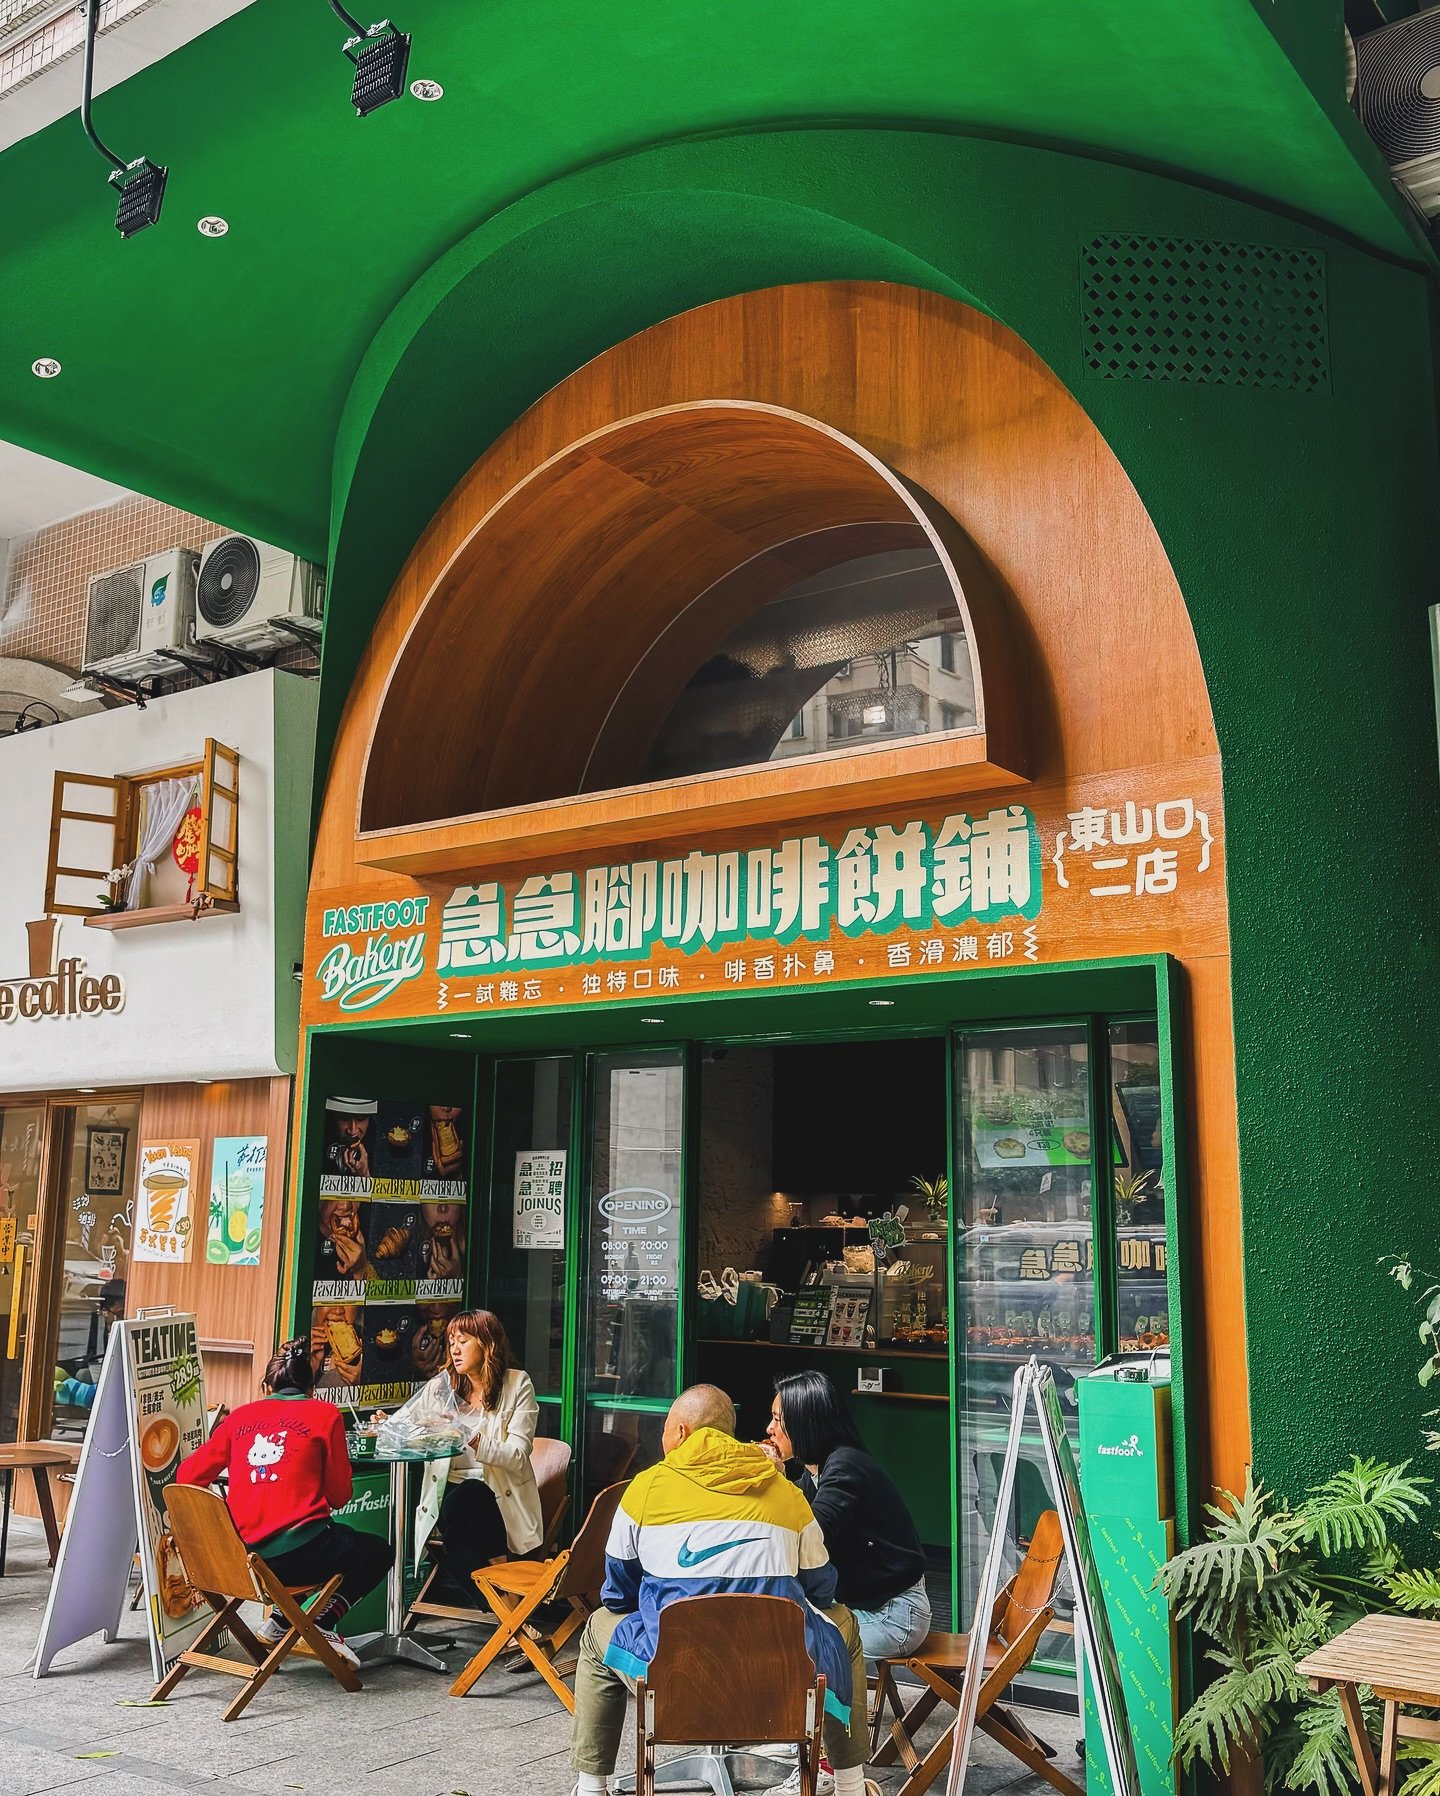 Hurrying to the next #cafe to chill. ☕️
#jazpsterchina #guangzhou